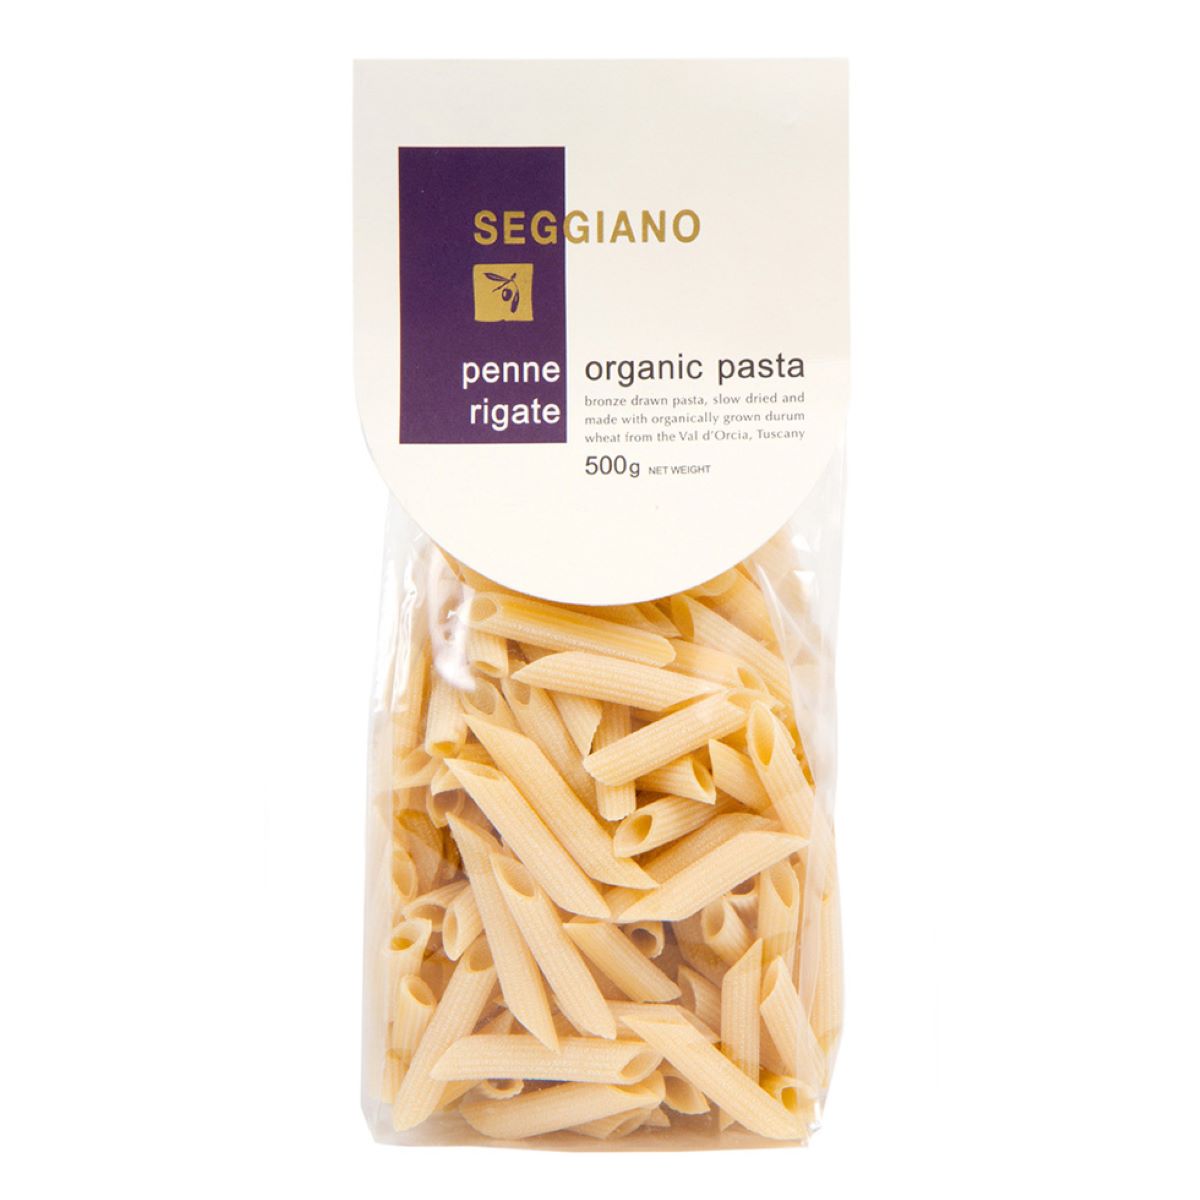 Seggiano Penne Rigate Organic Pasta 500g